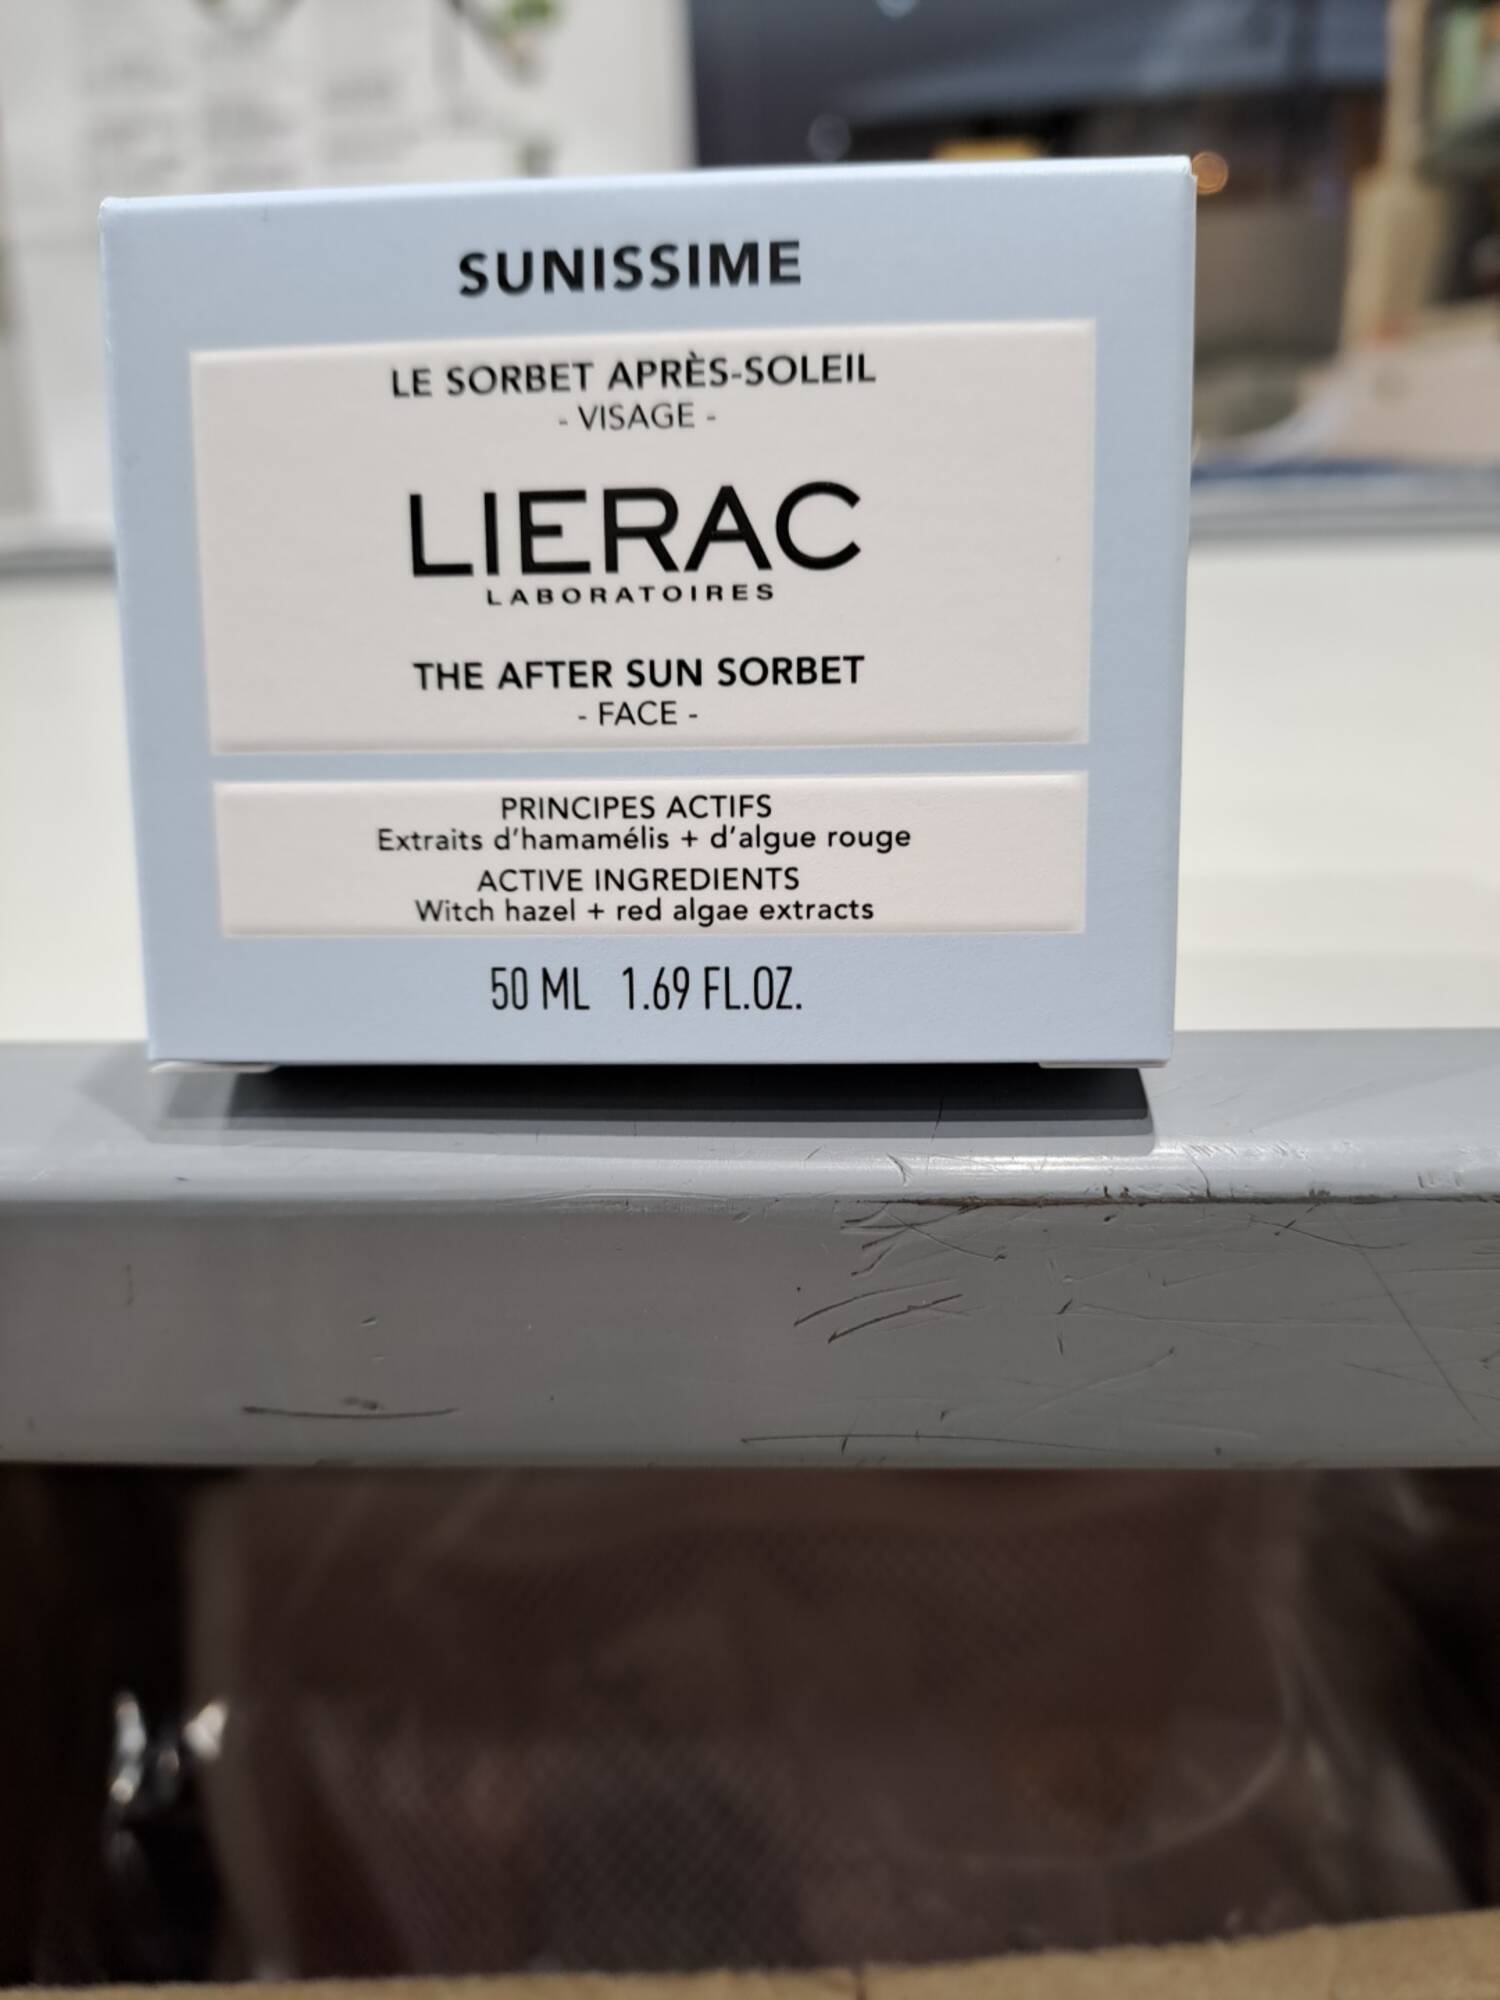 LIÉRAC - Sunissime - Le sorbet après-soleil visage